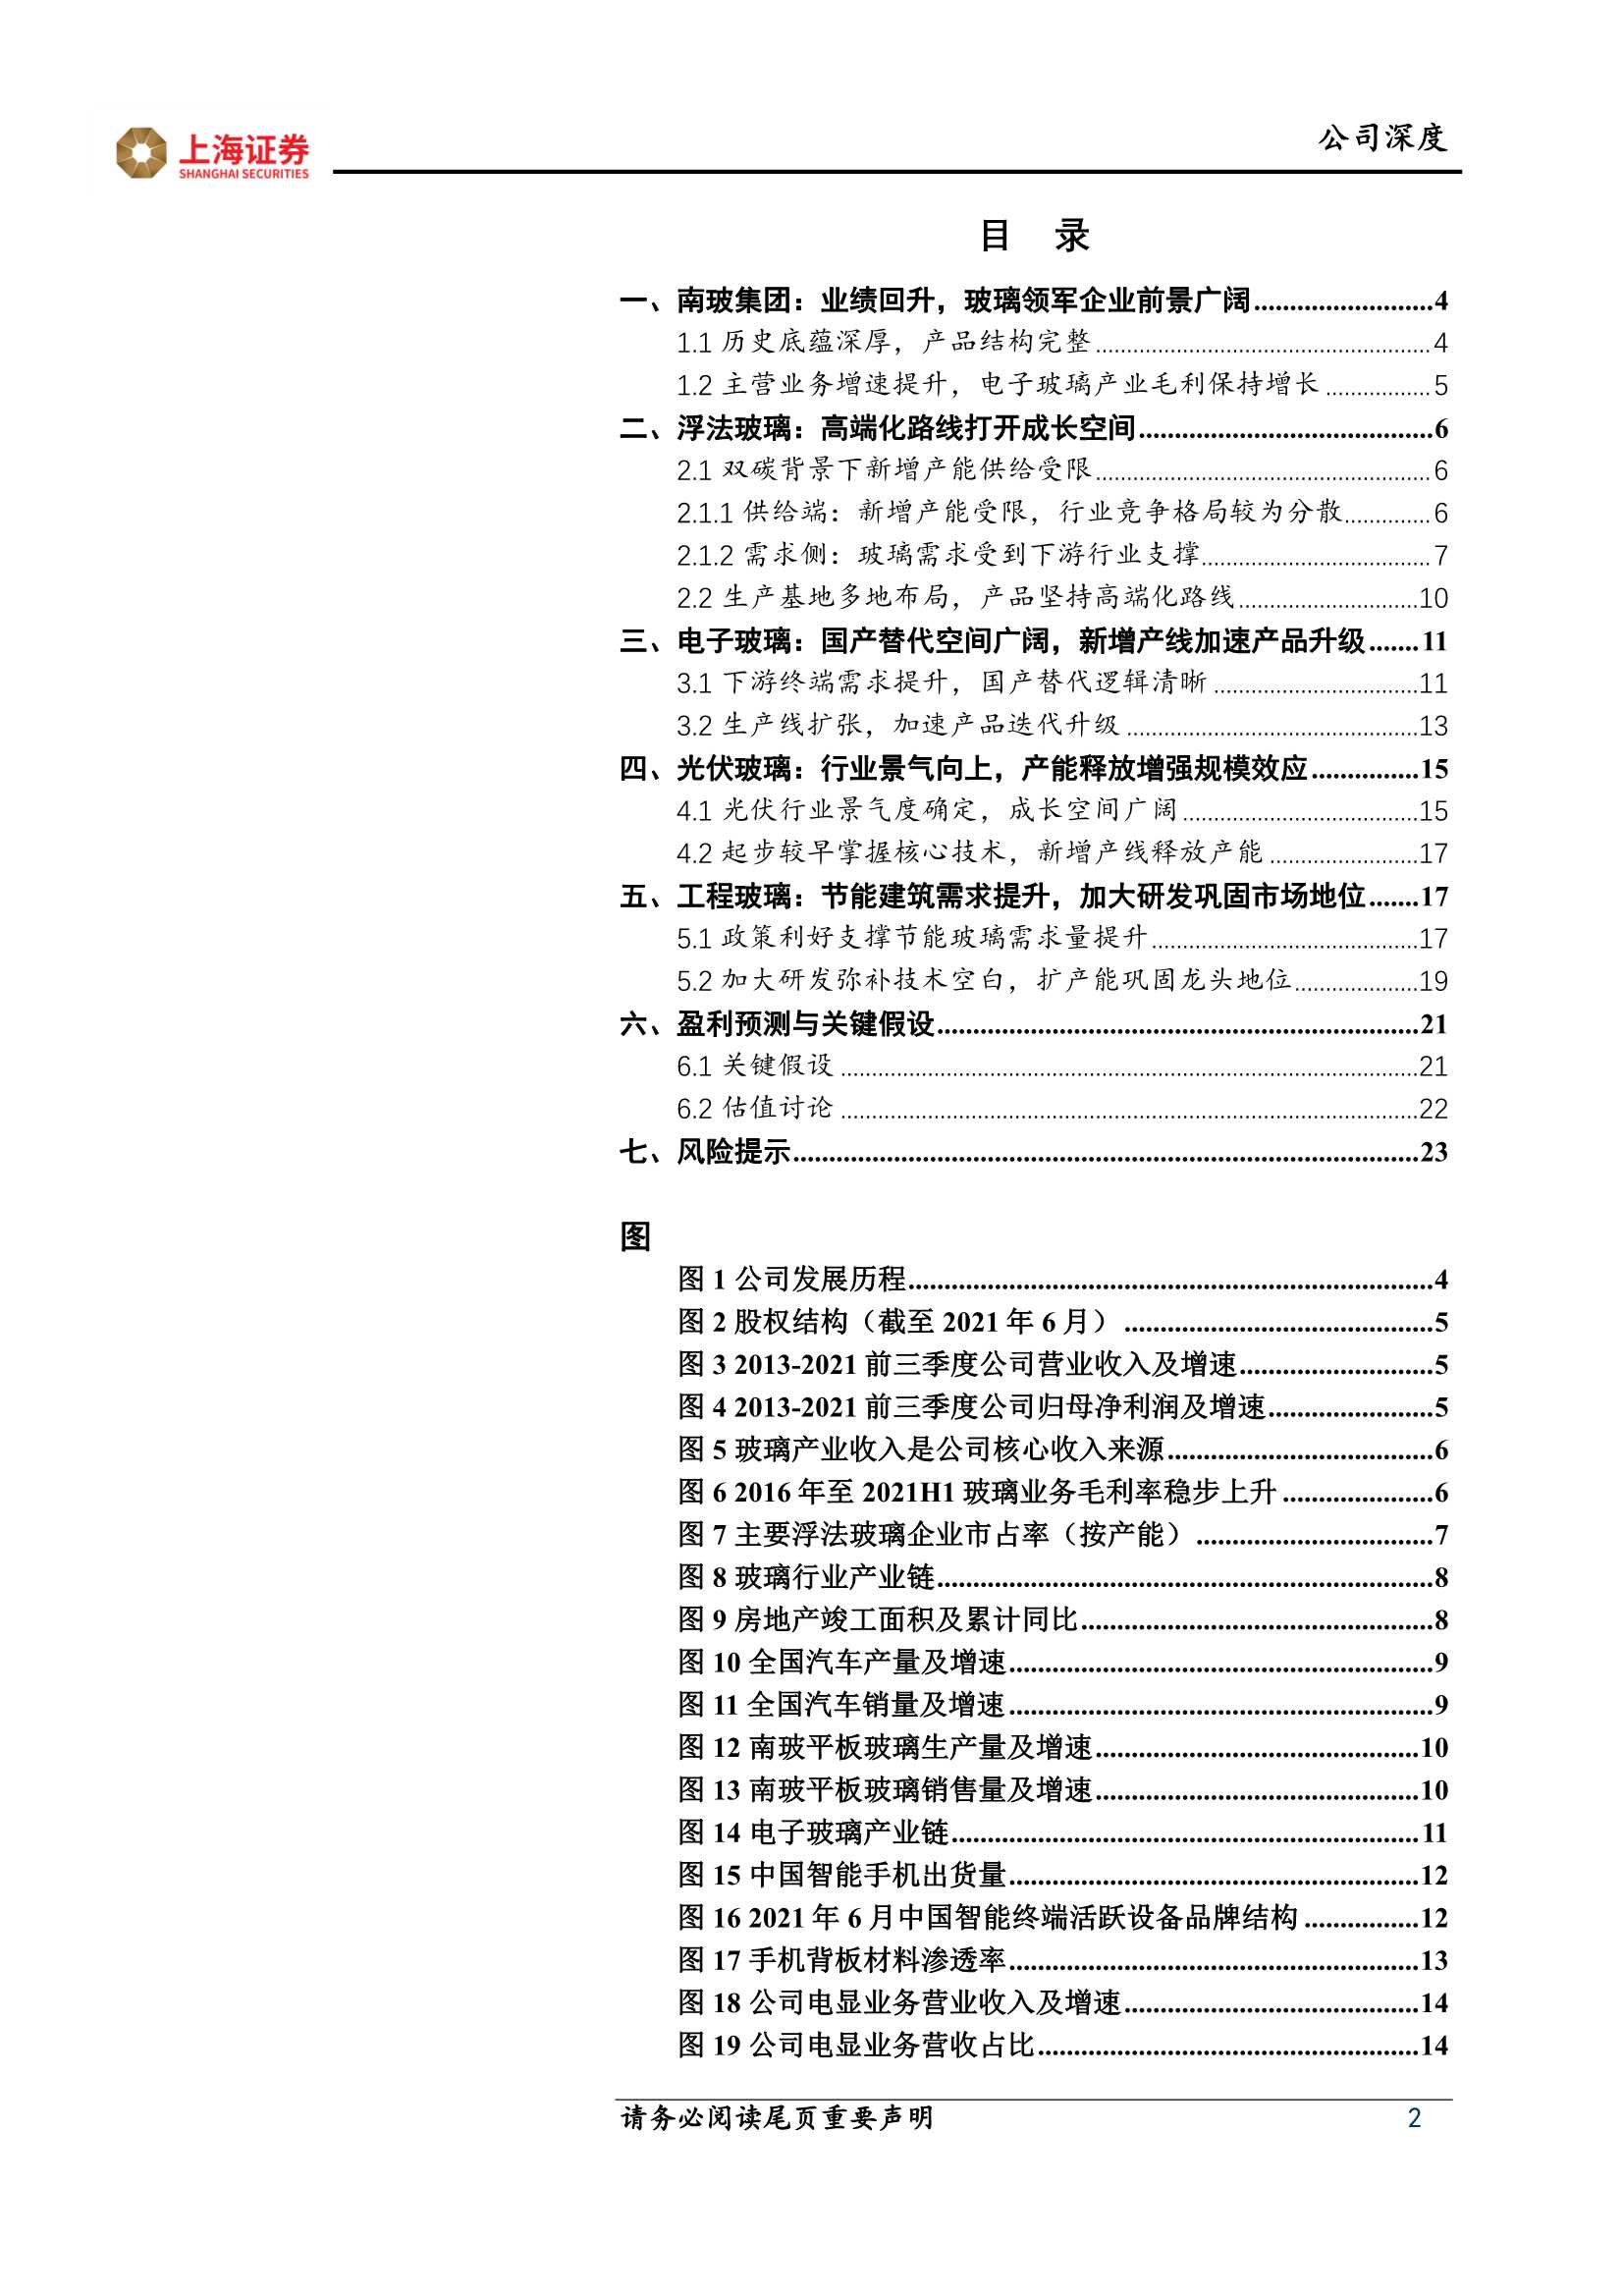 上海证券-南玻A-000012-玻璃行业老牌劲旅，“电光”驱动增长可期-20211231-25页